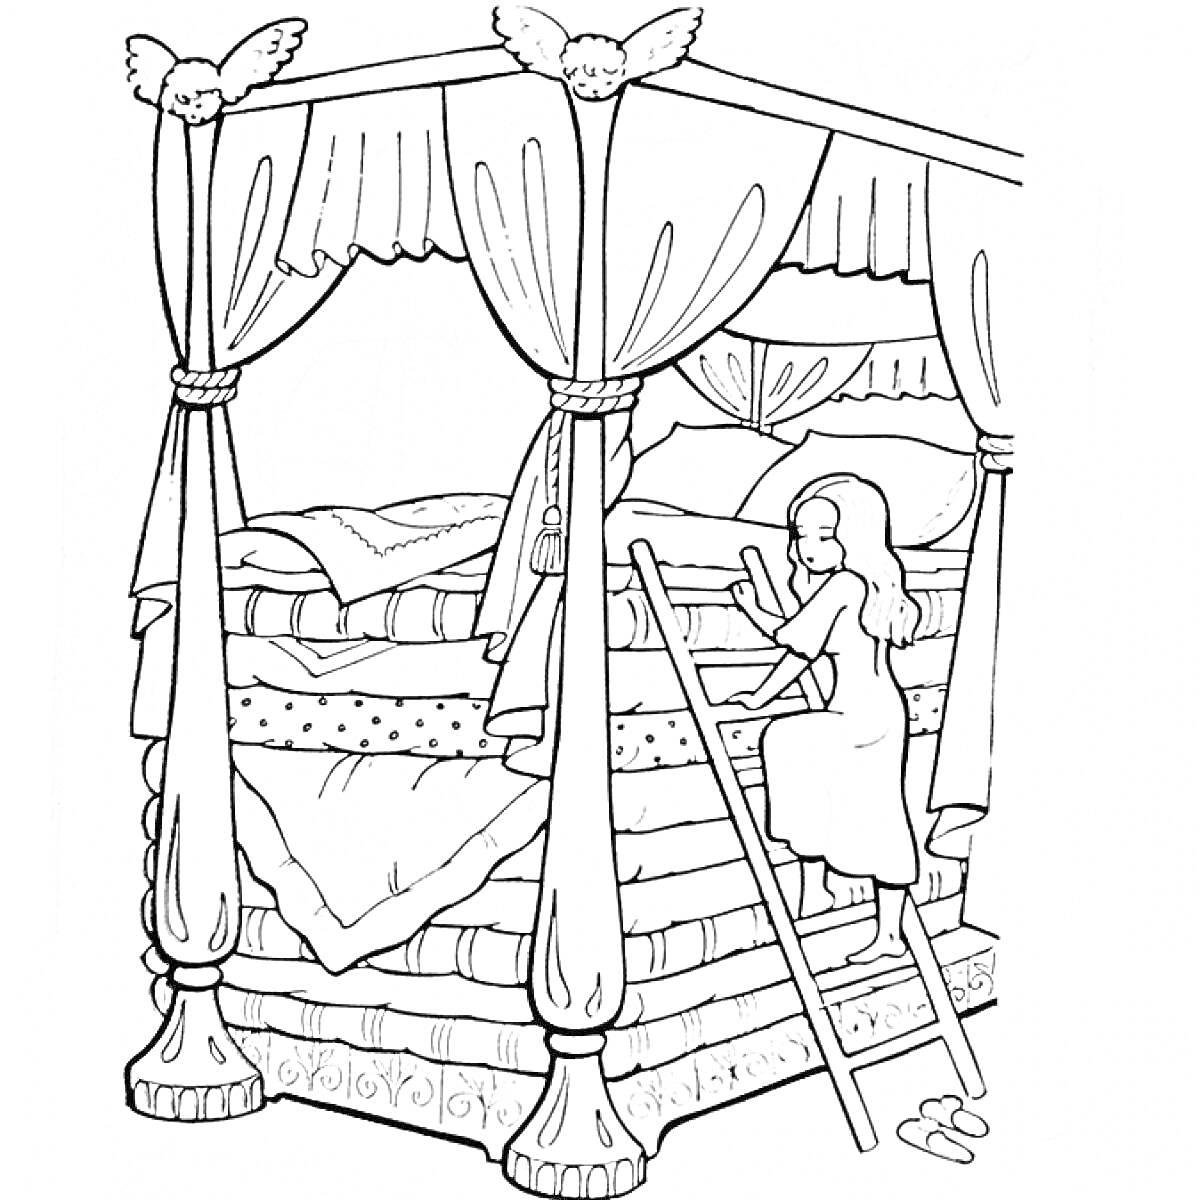 Принцесса на горошине поднимается по лестнице к кровати с множеством матрасов и балдахином